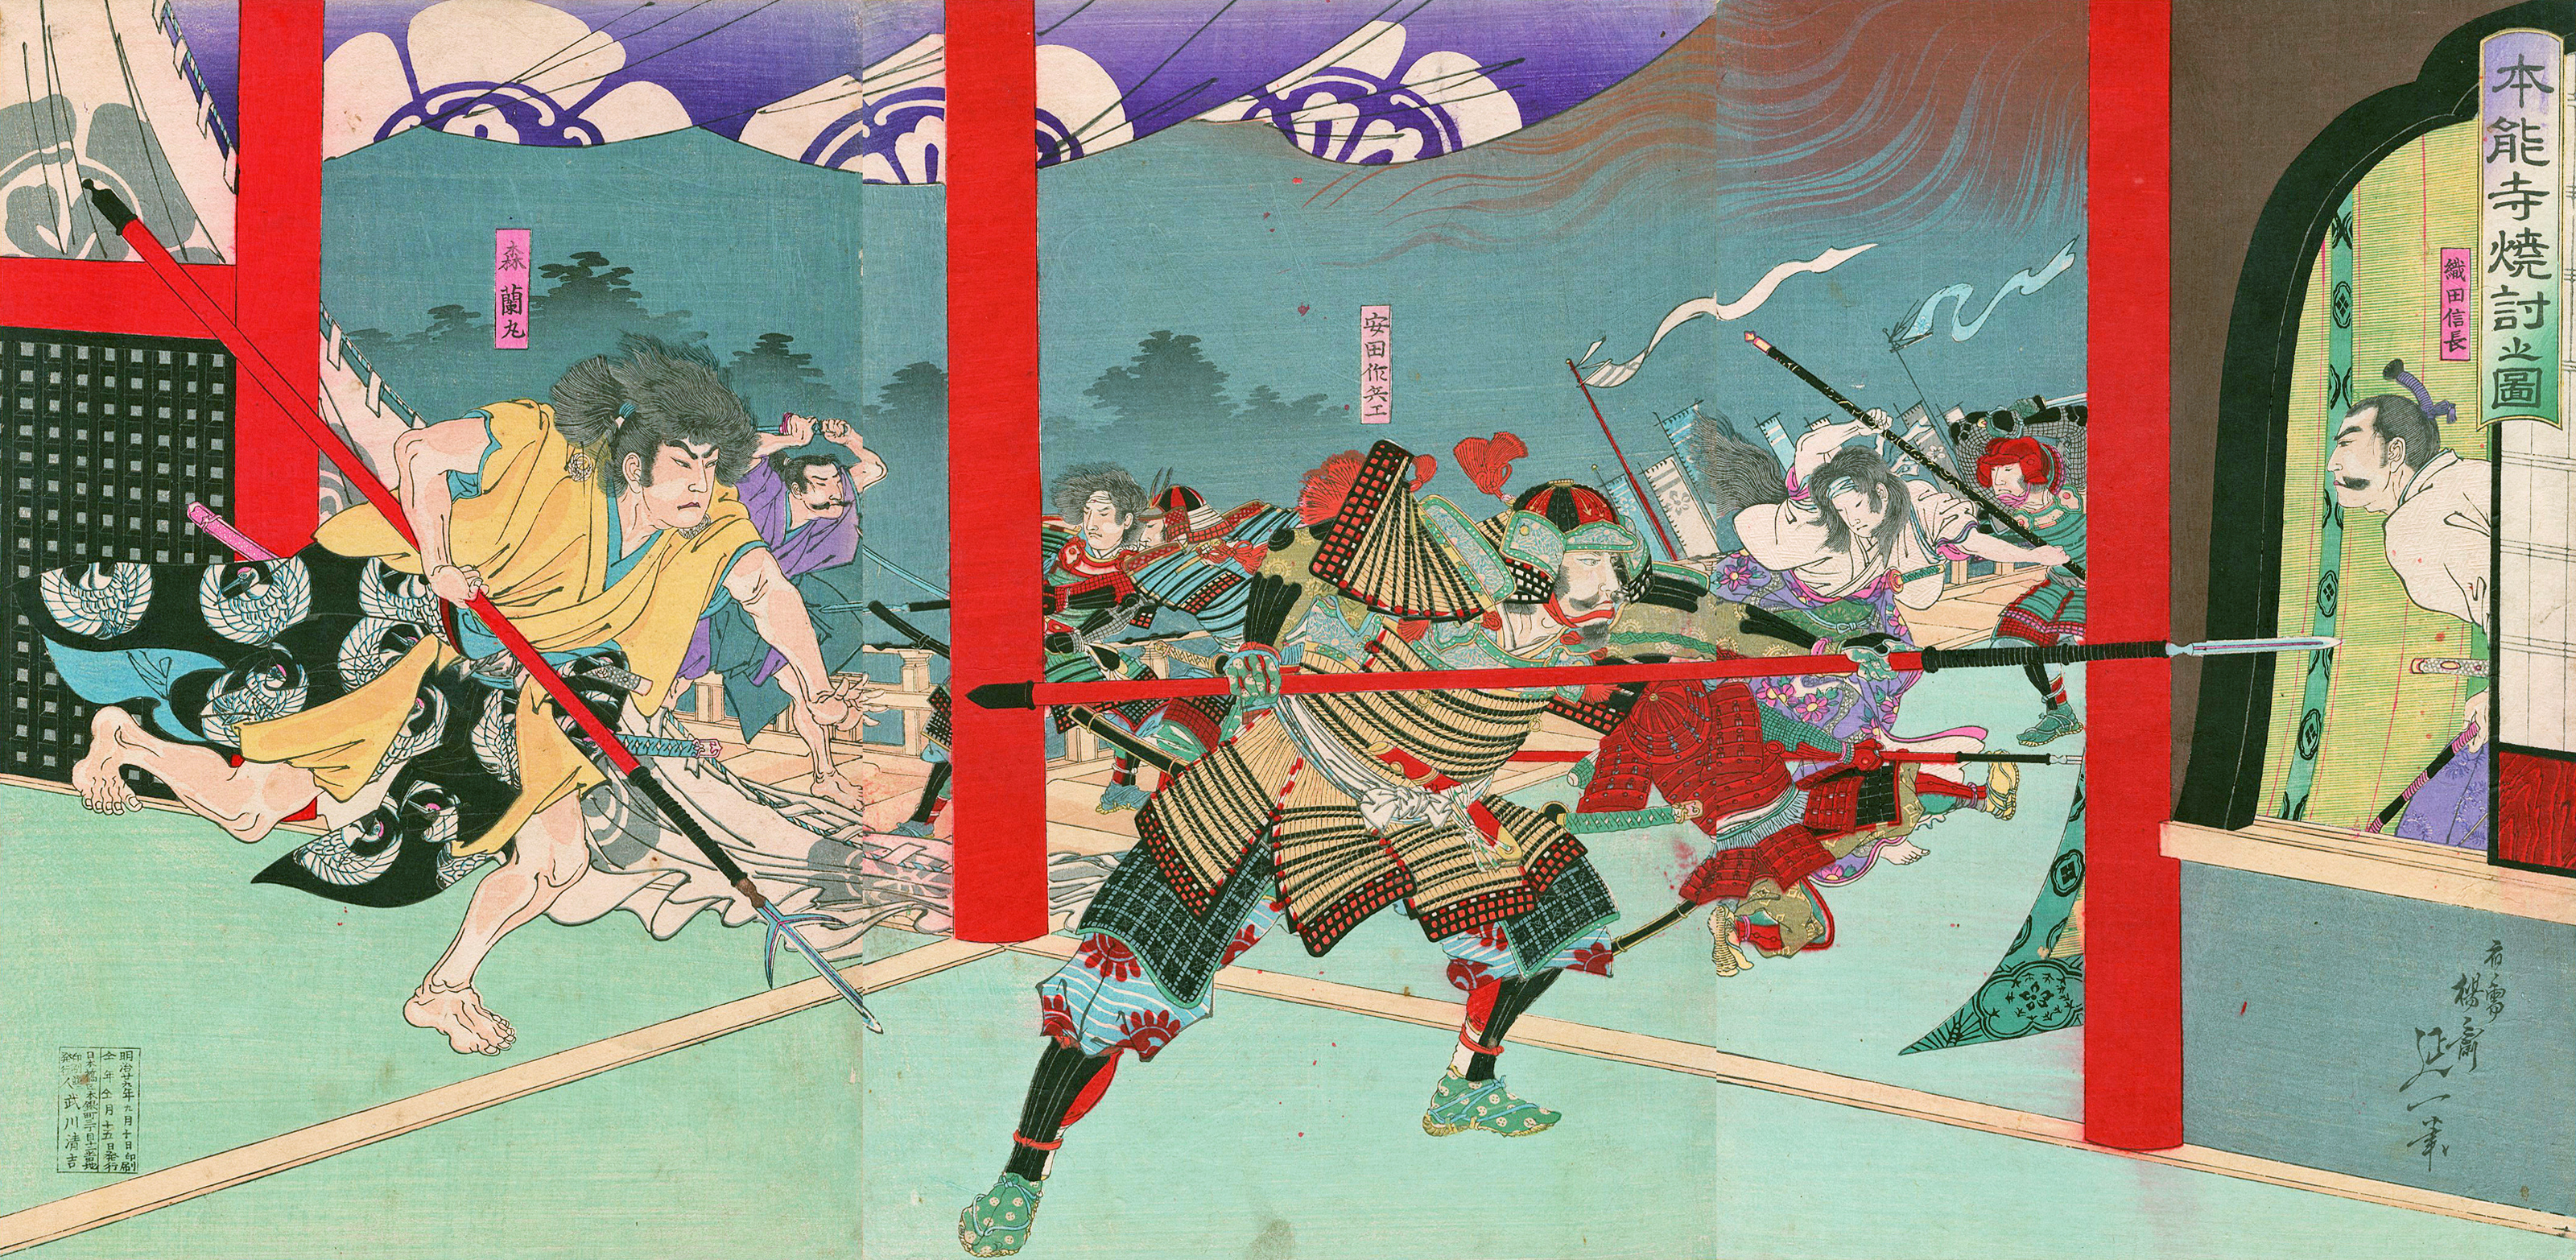 oda nobunaga – Tod durch Selbstmord und Attentat